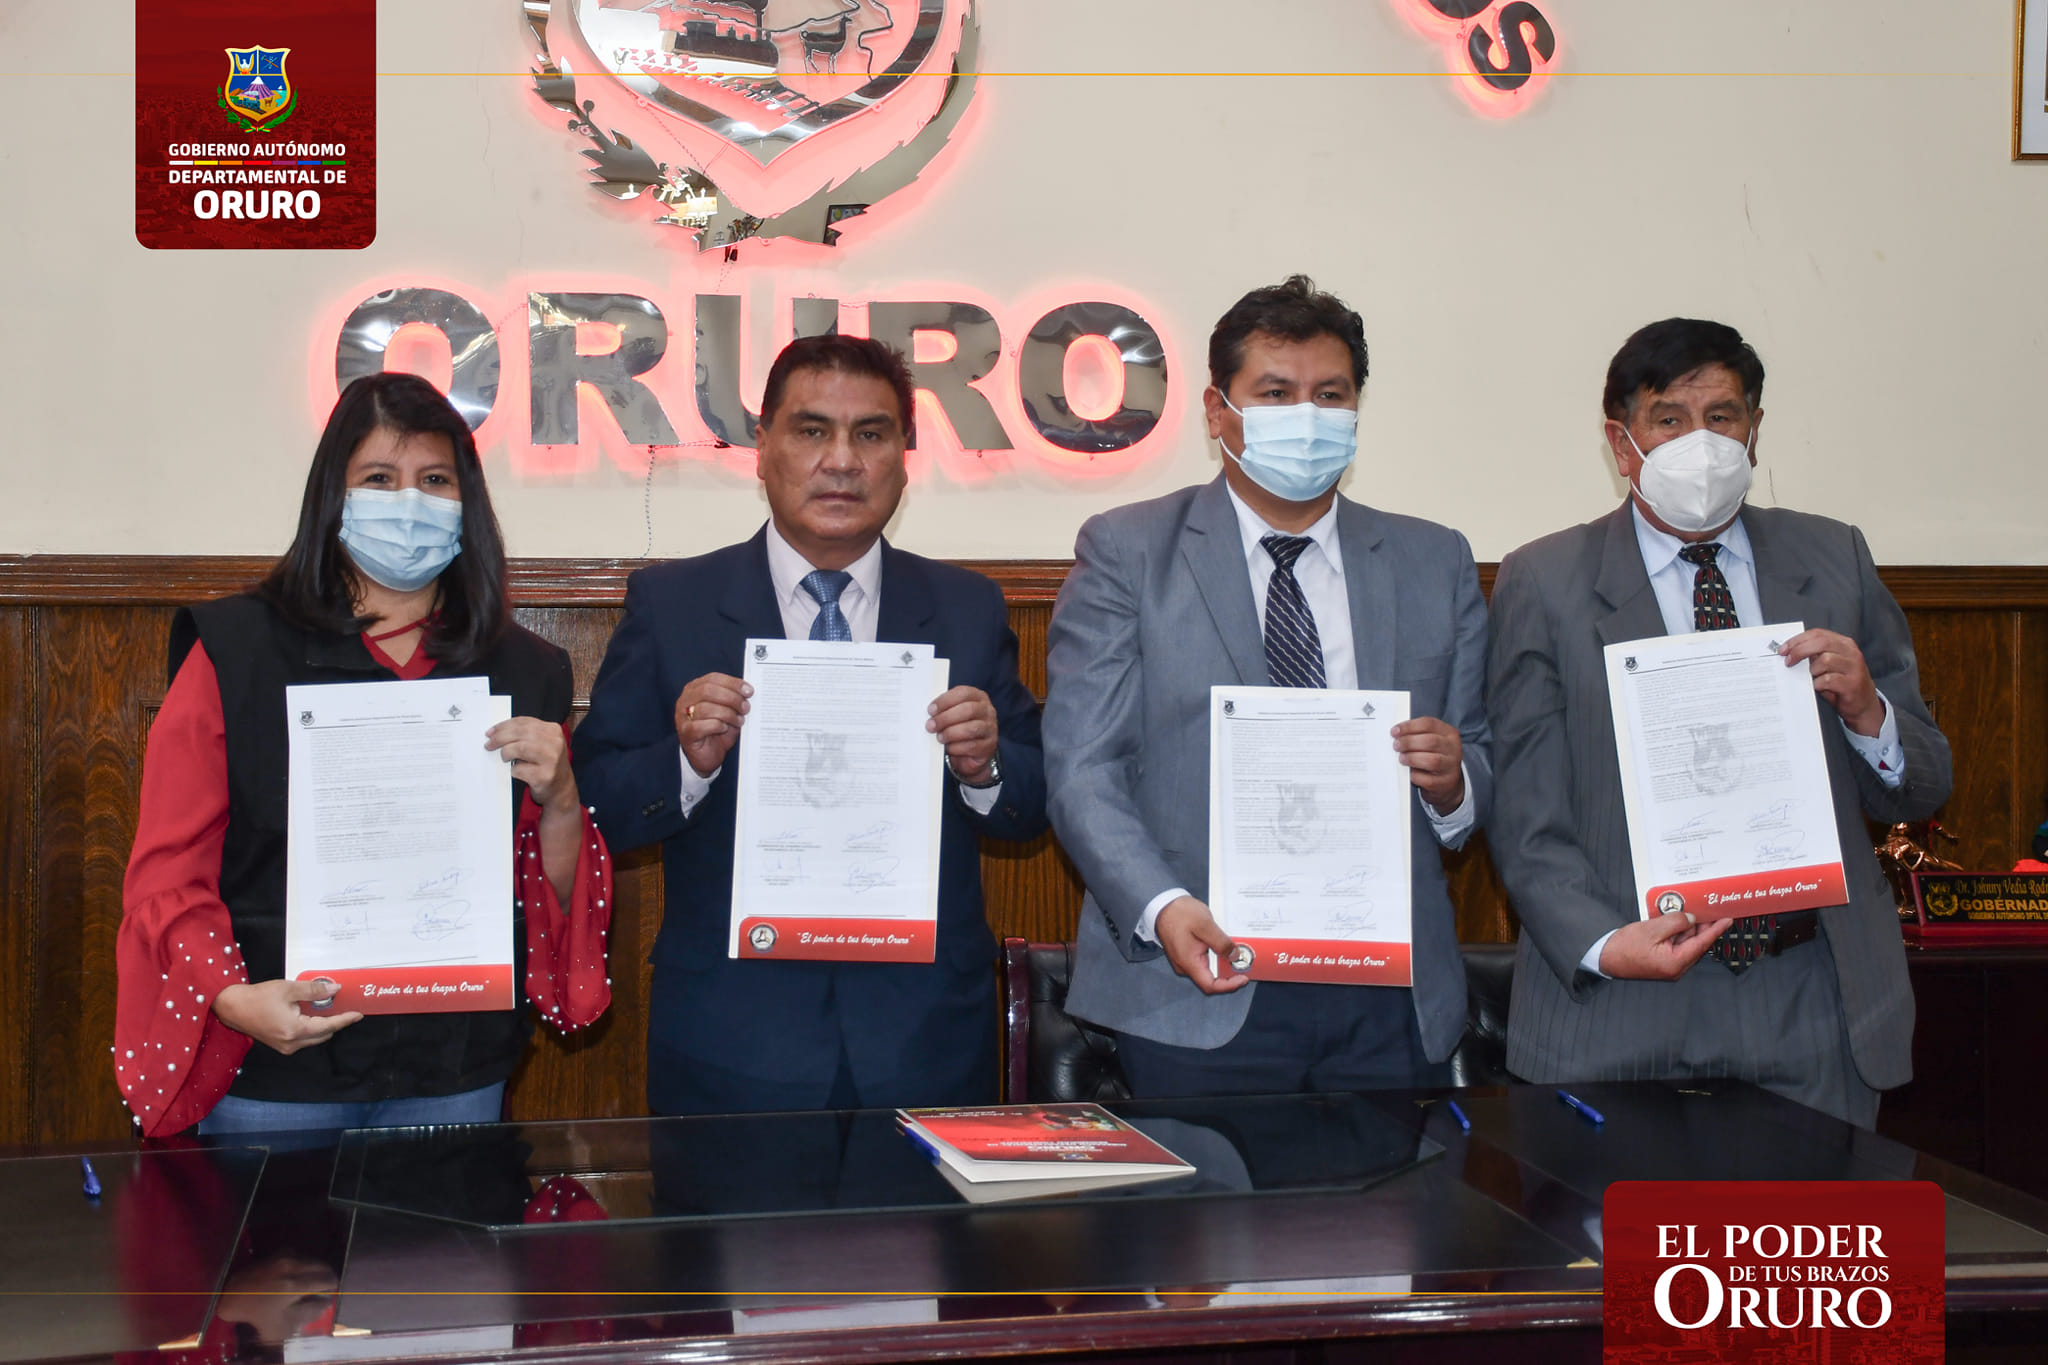 Servicios oftalmológicos en Oruro continuarán siendo fortalecidos tras ampliación de convenio